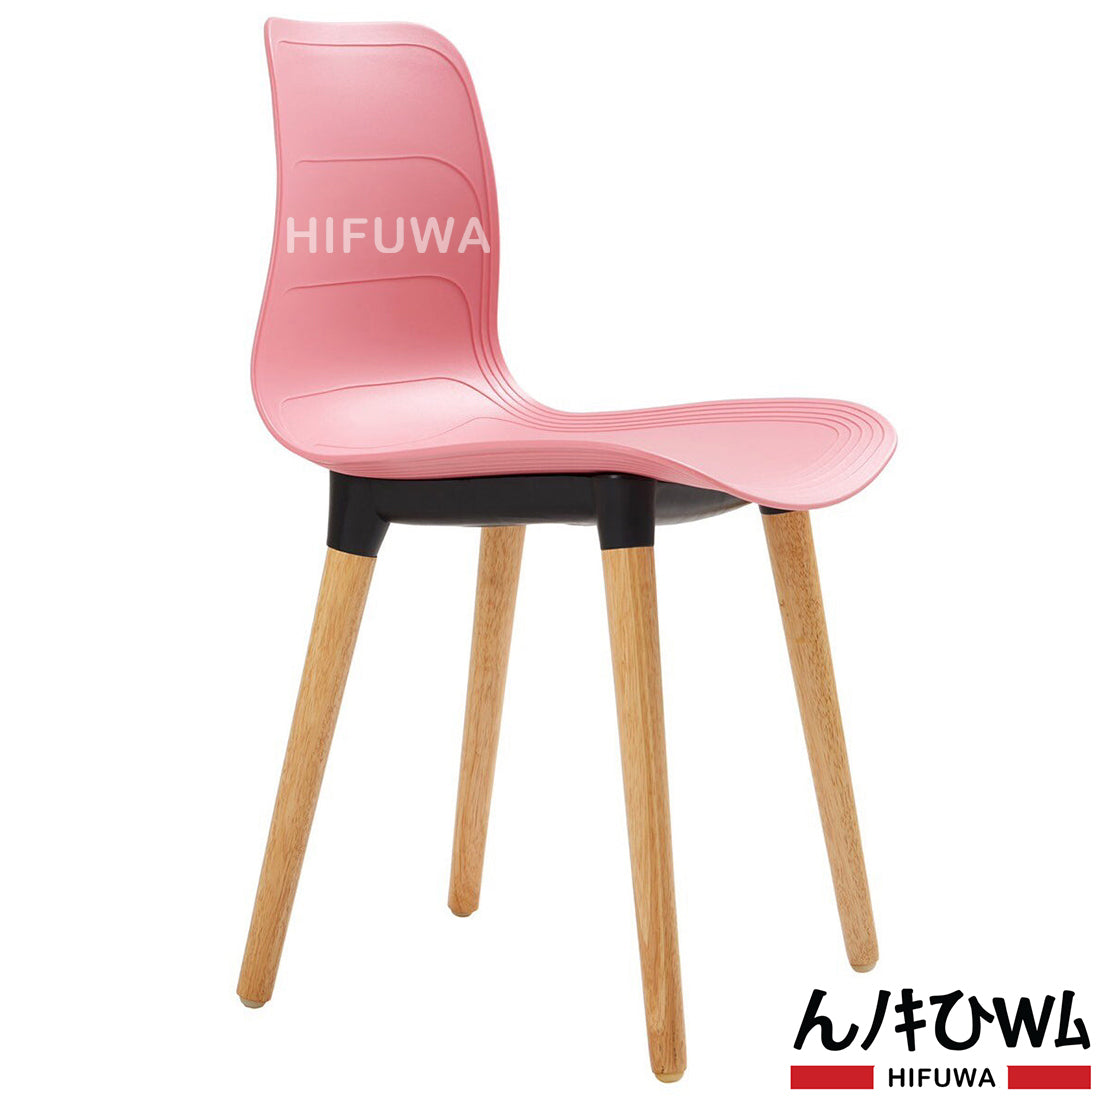 Ghế nhựa chân gỗ - HIFUWA-G (Hồng)